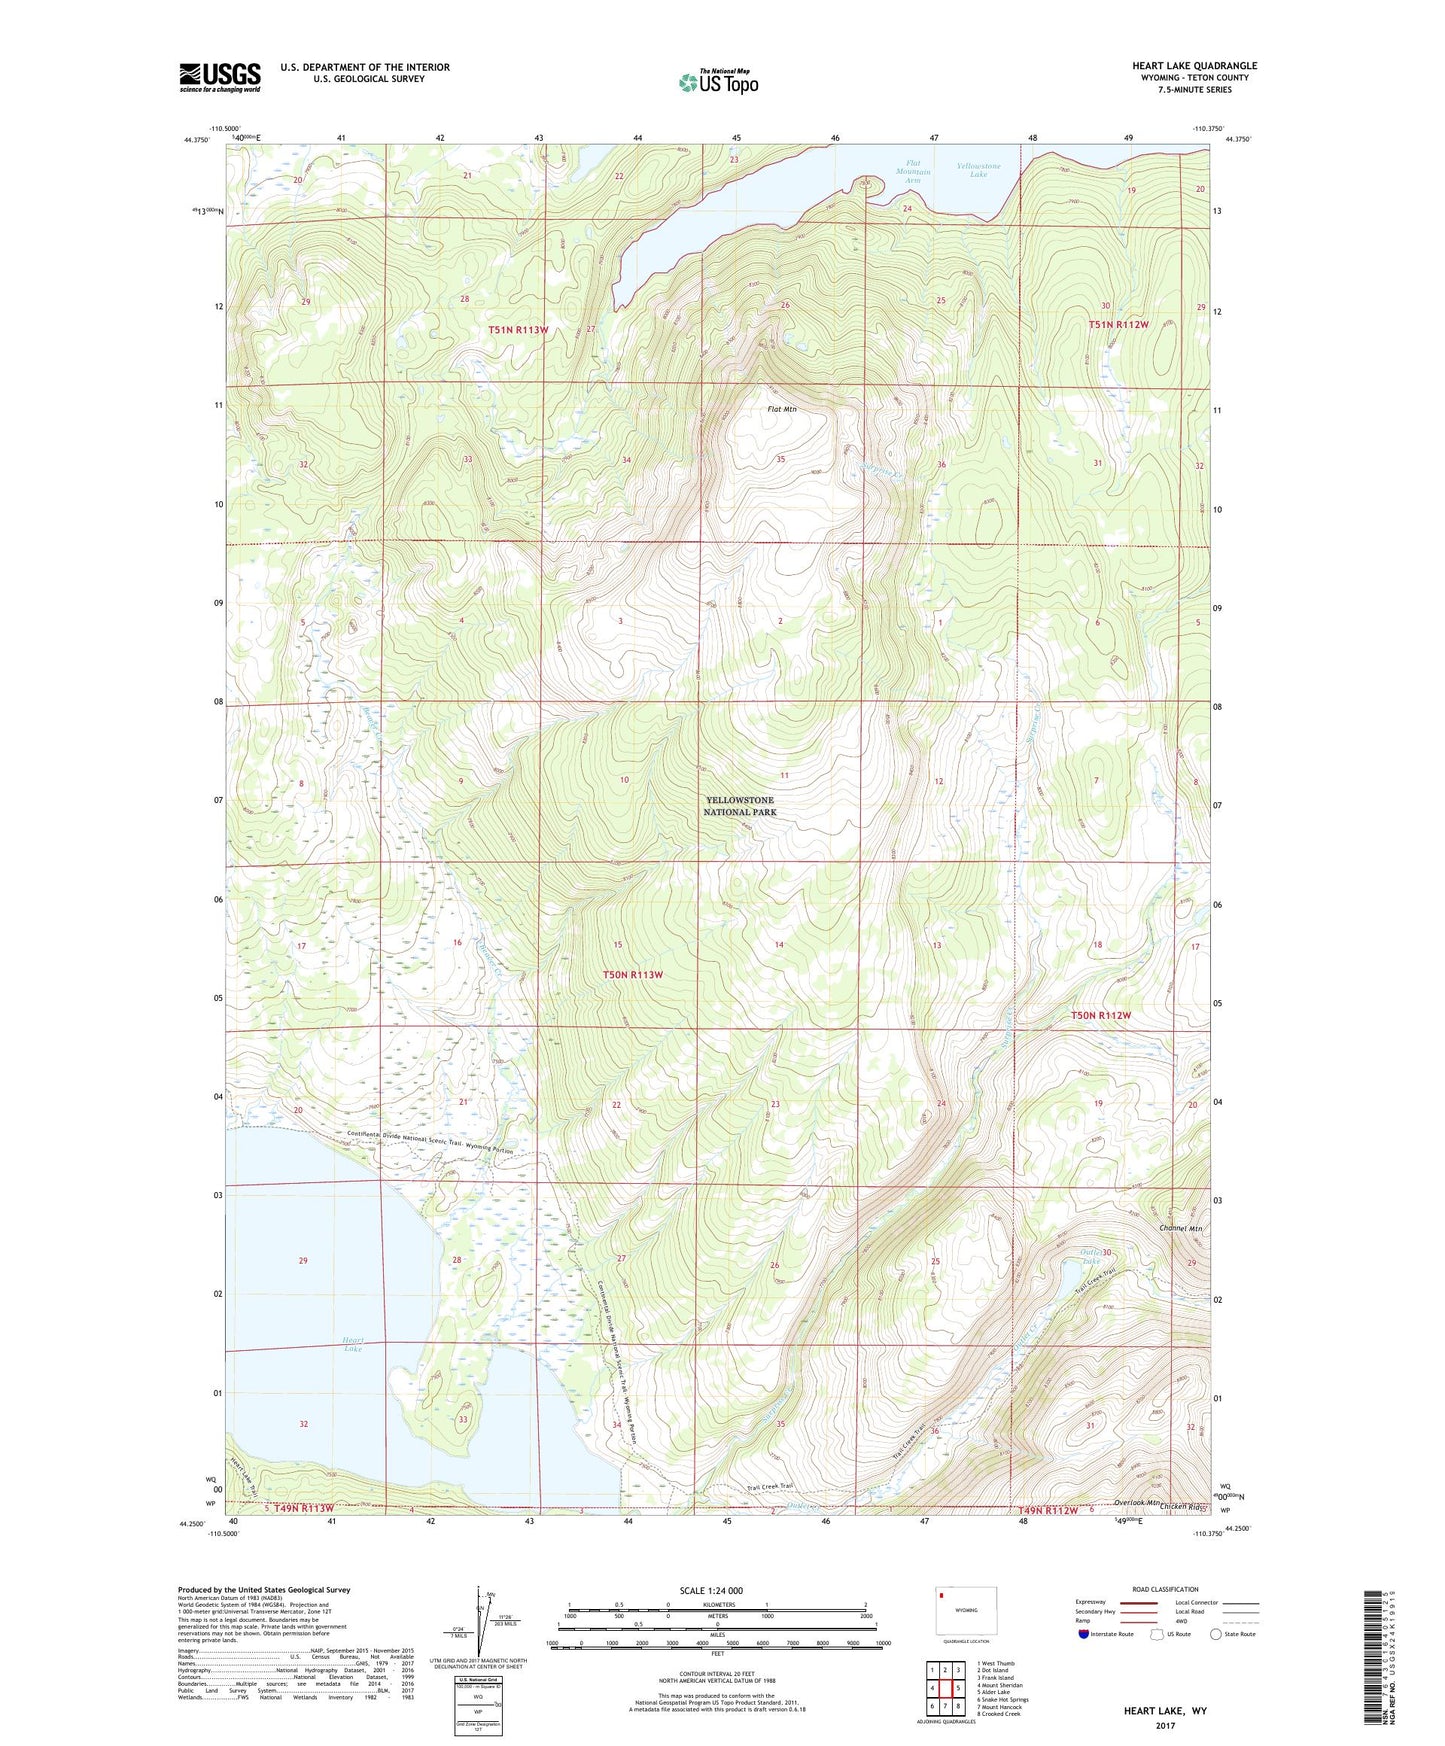 Heart Lake Wyoming US Topo Map Image